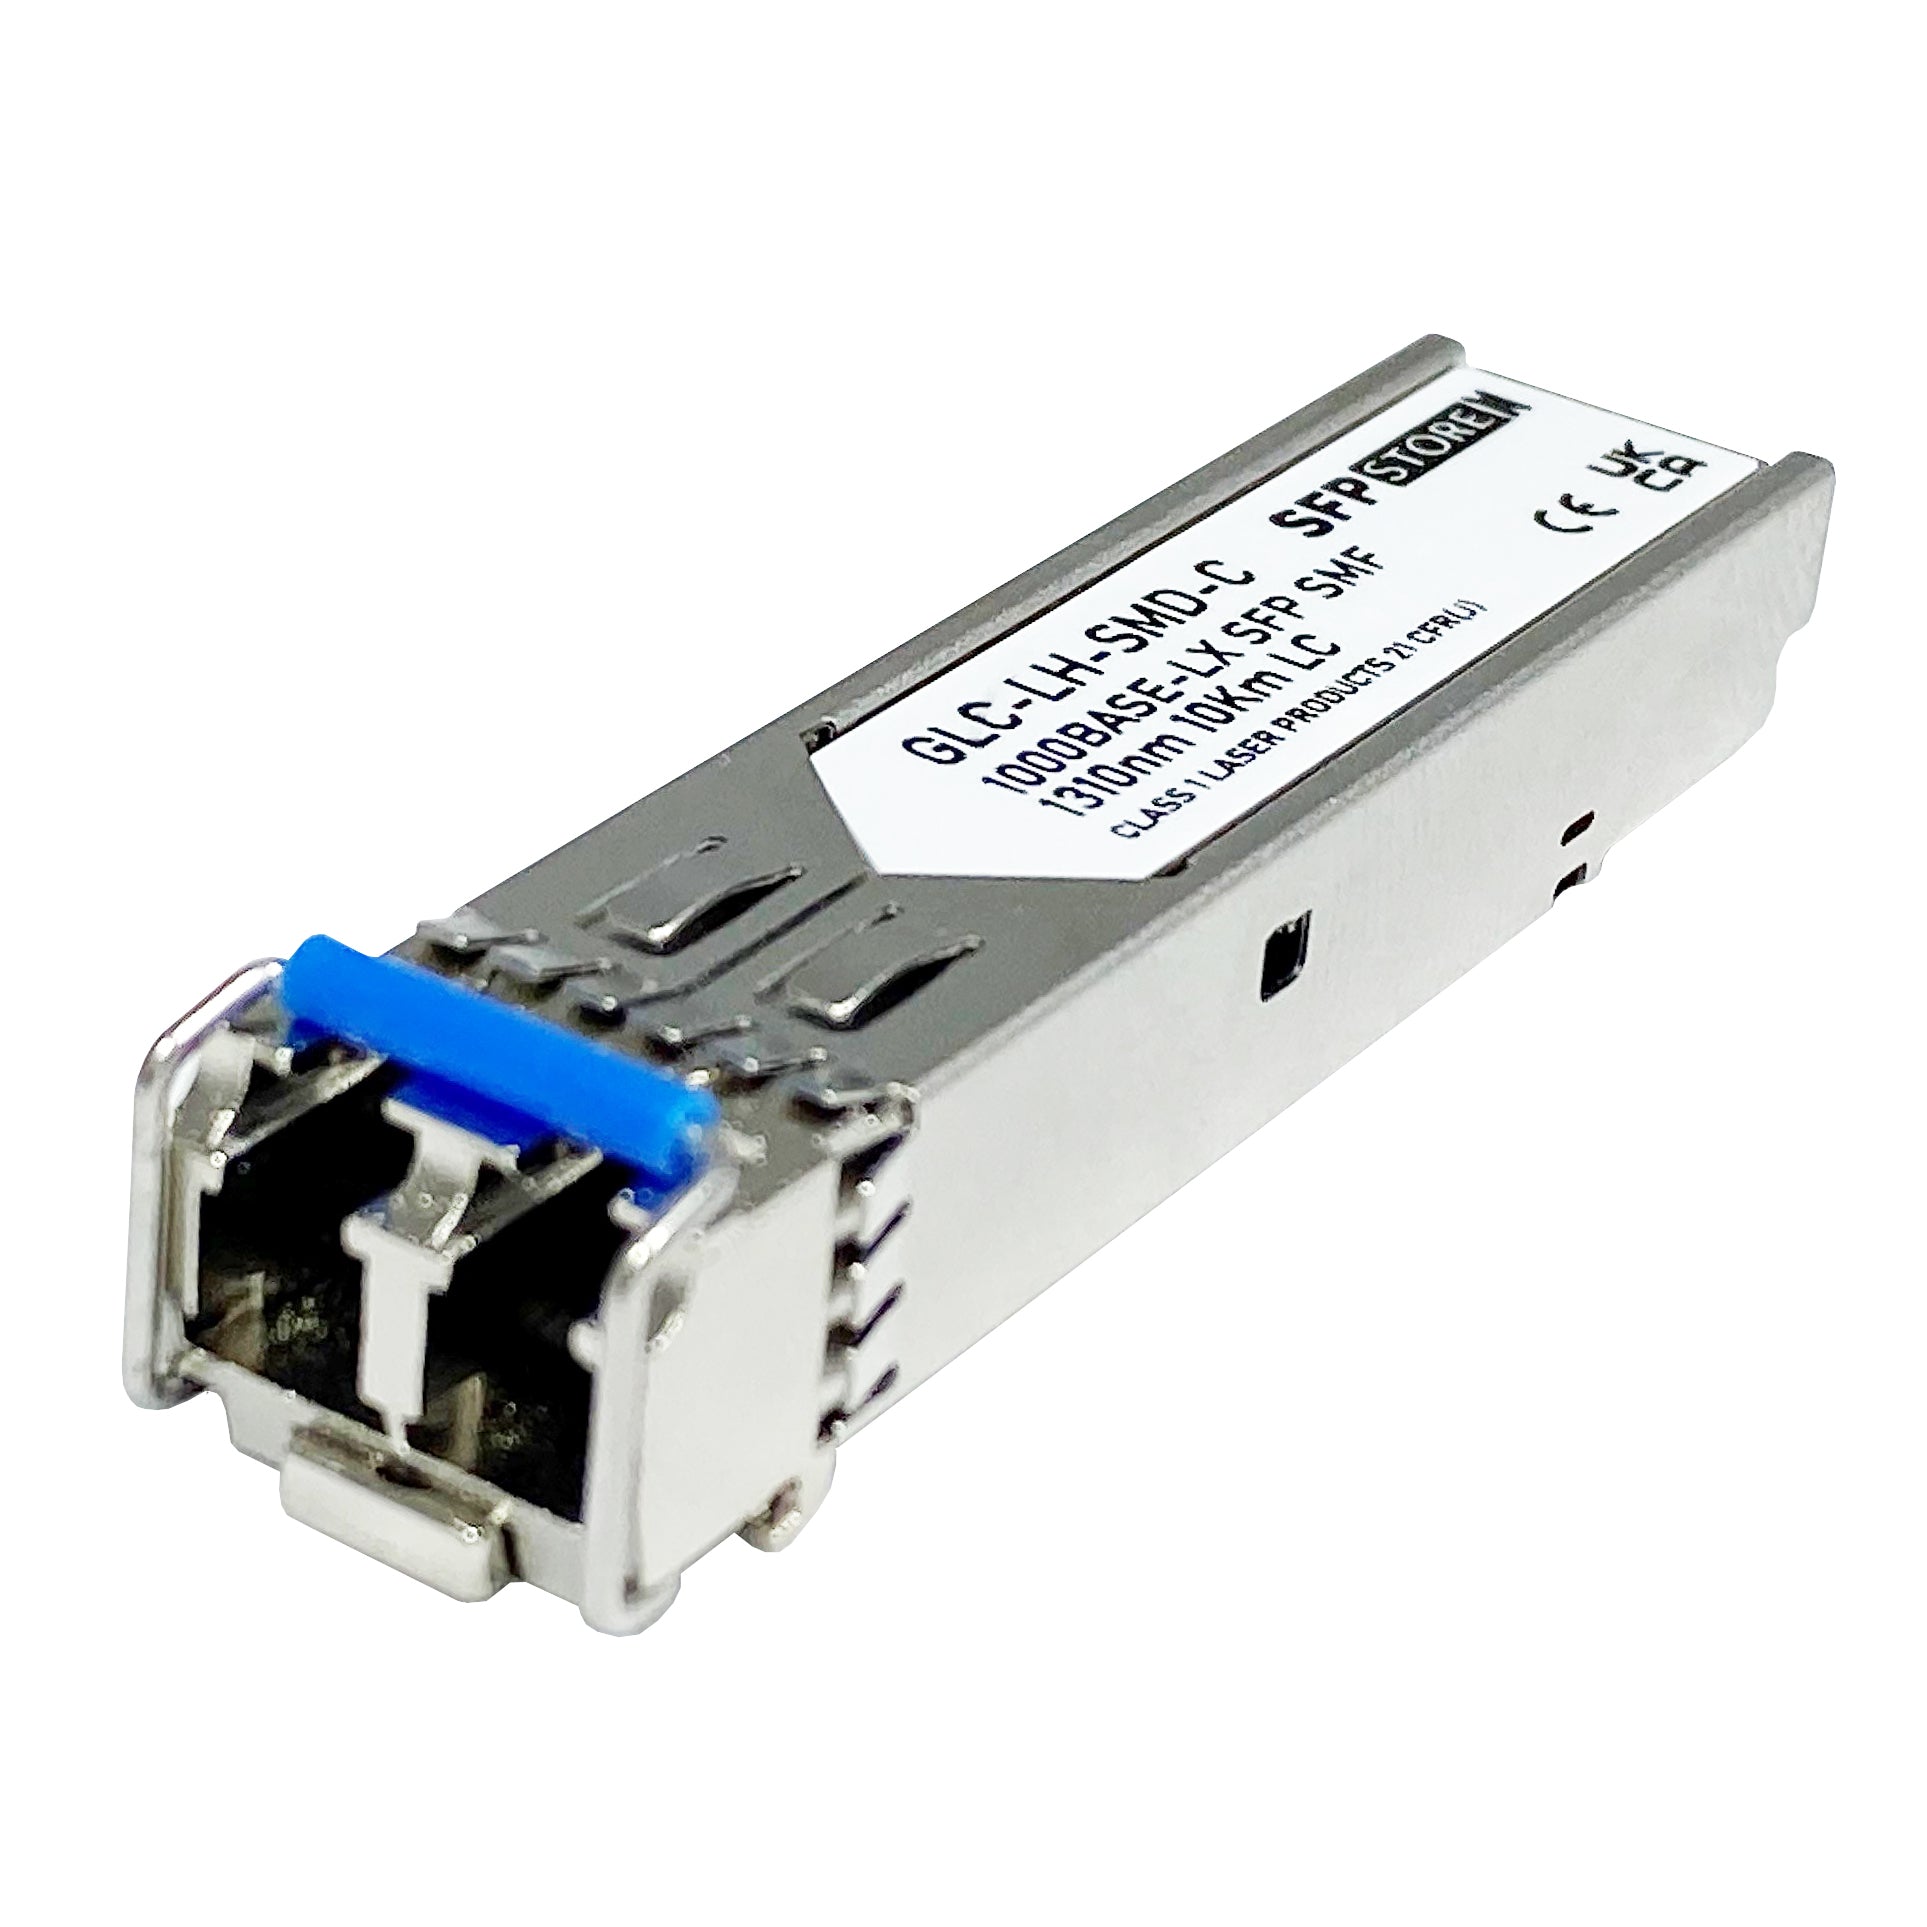 PAN-SFP-LX-C Palo Alto Compatible 1G LX SFP LC Transceiver